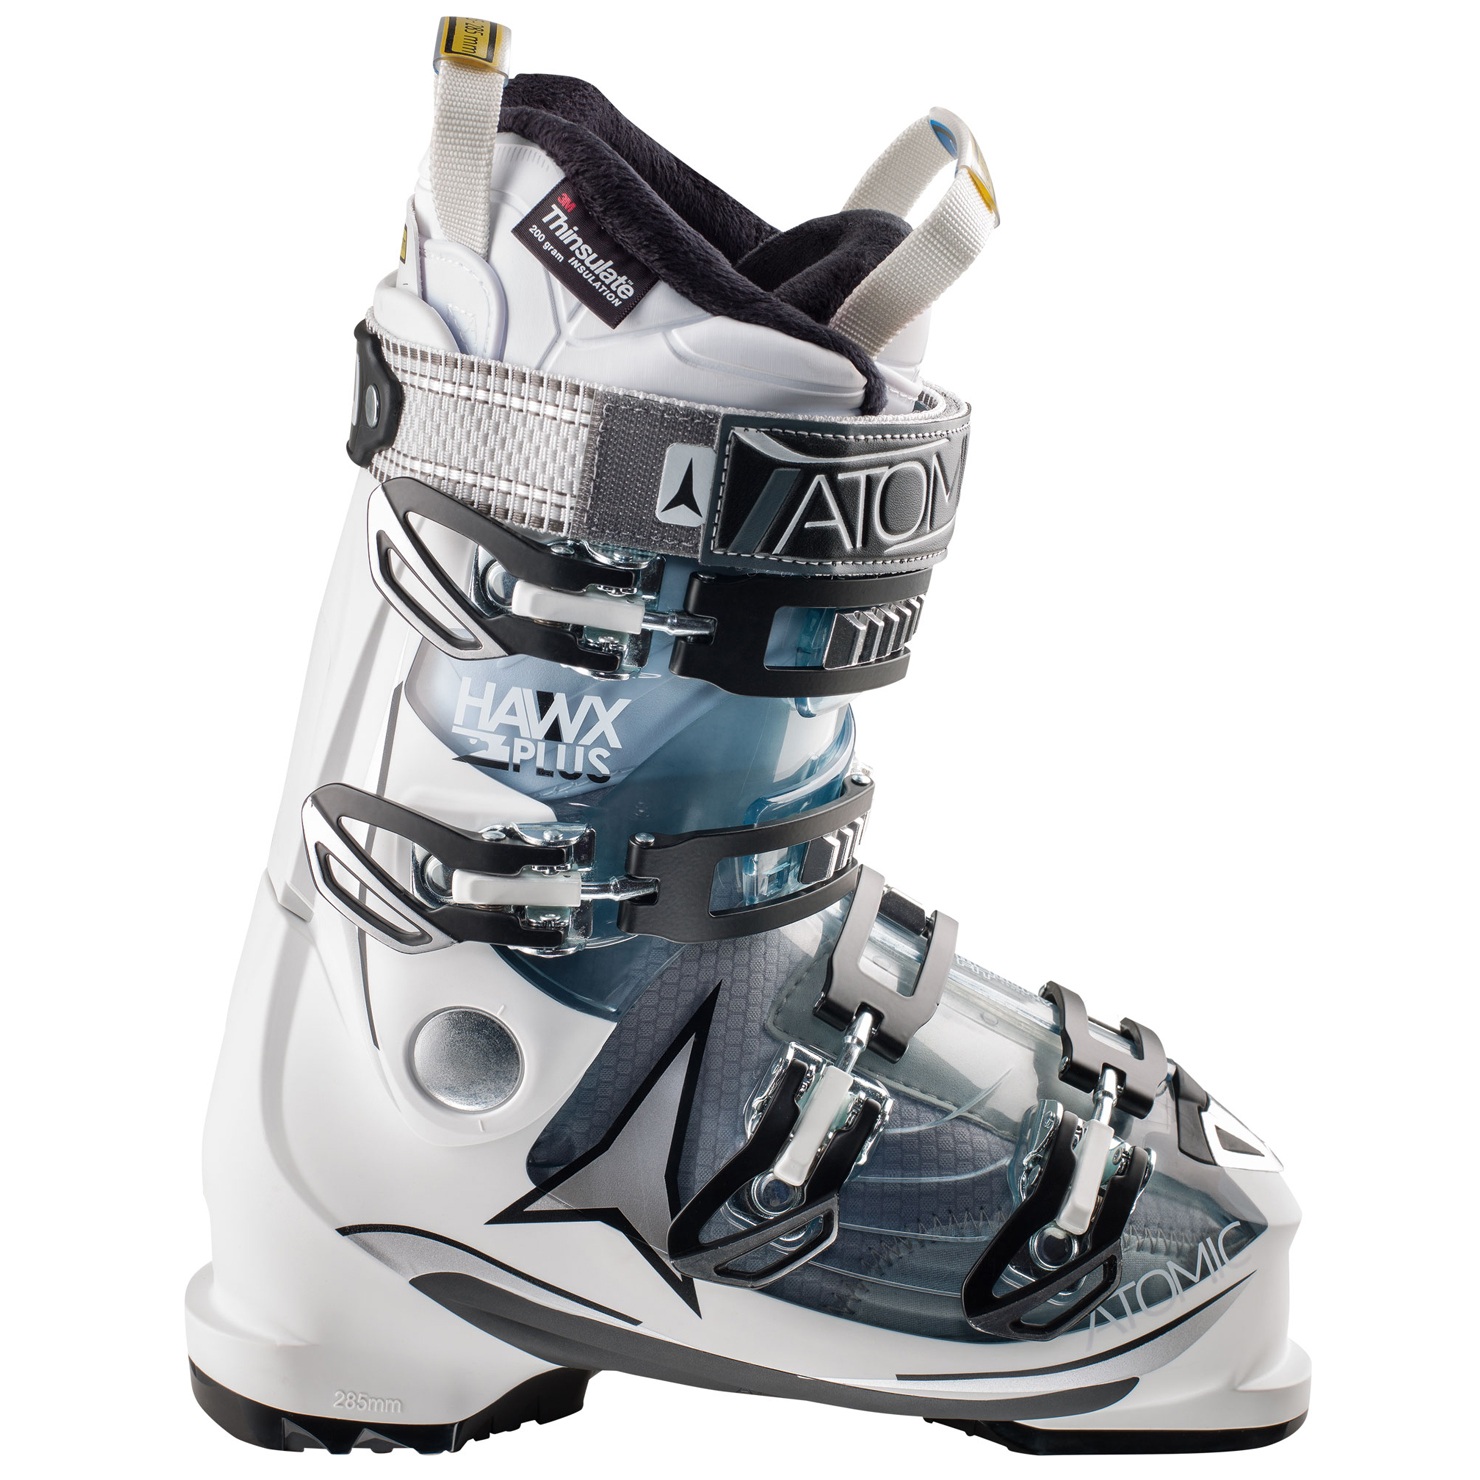 Dalbello Lupo AX 105 W LS W Ski Boot Size 26/26.5 Color White/Blue NEW in box 